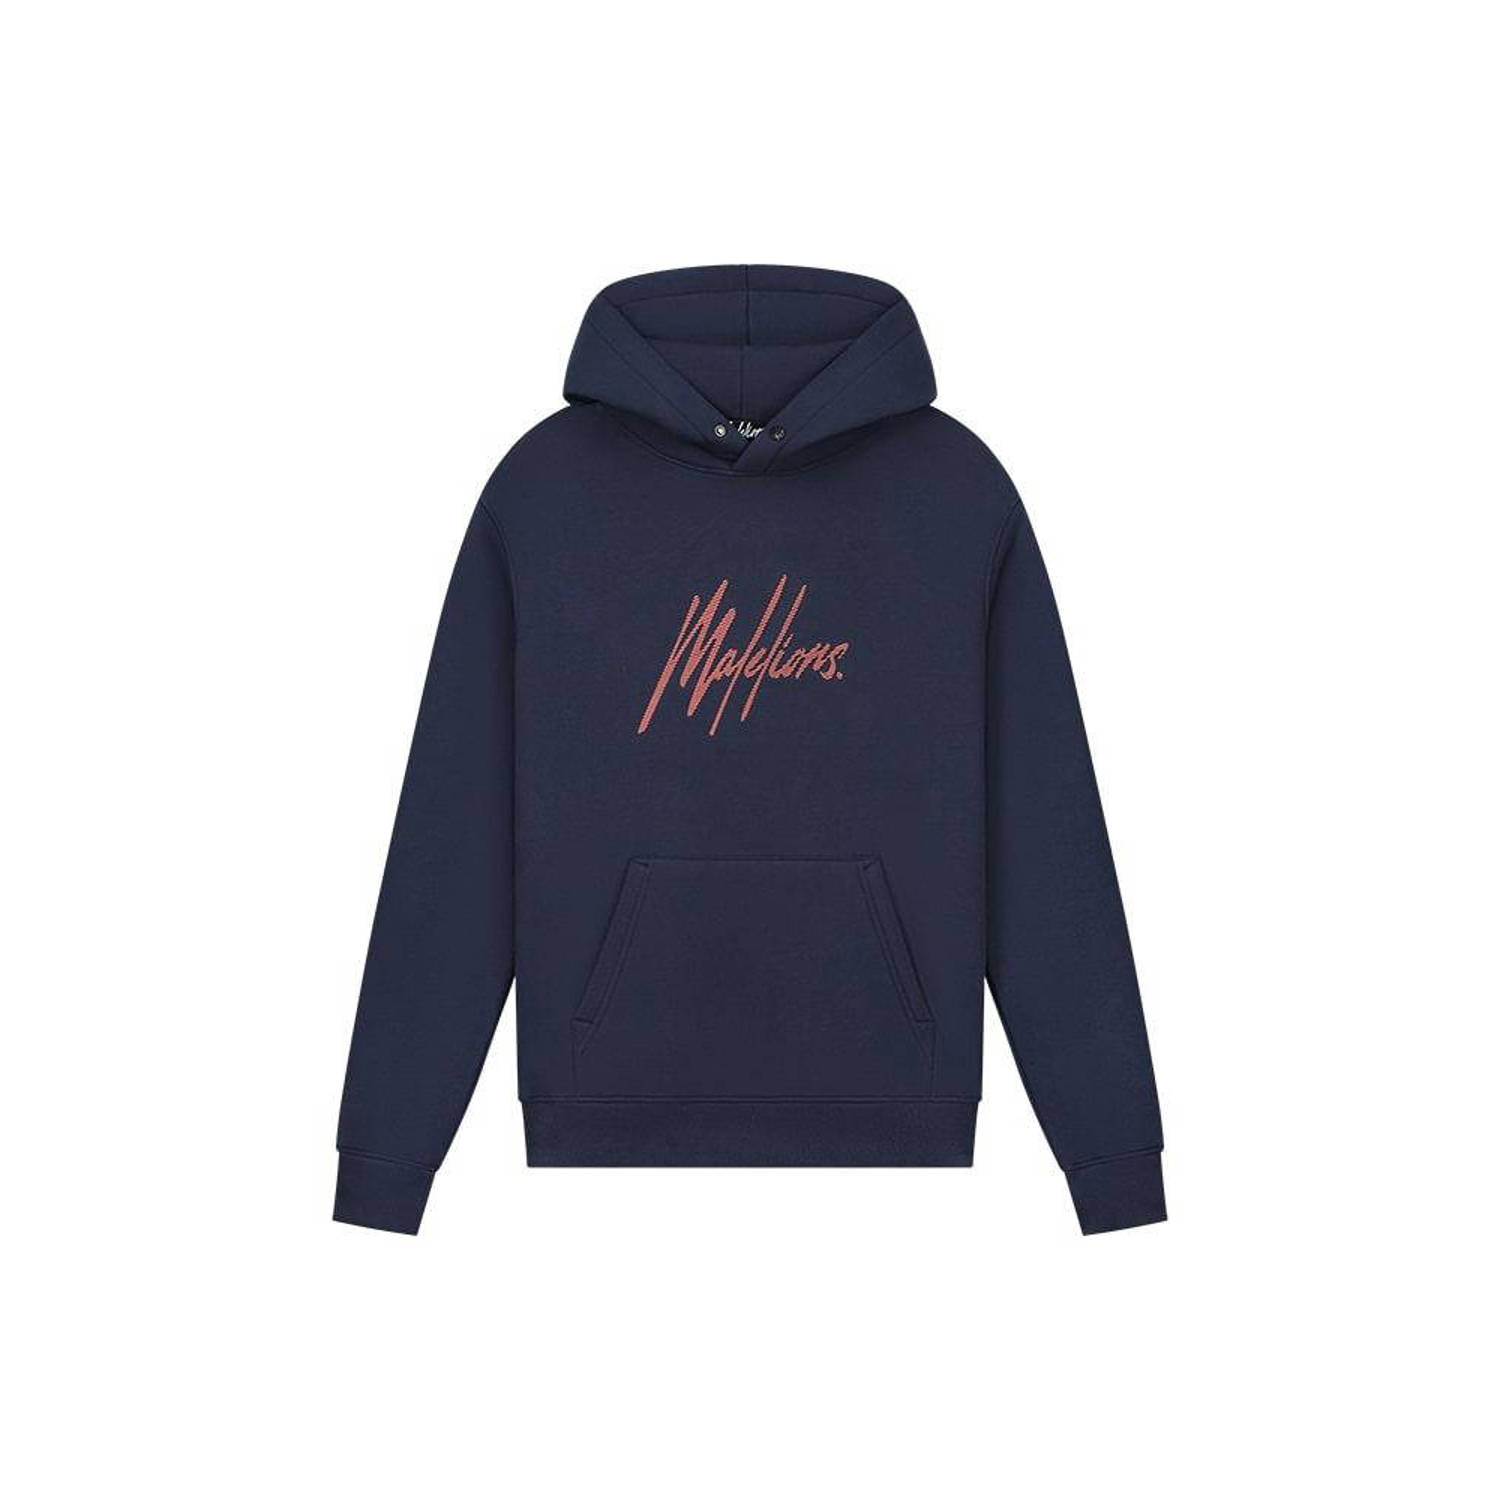 Malelions hoodie met logo navy coral